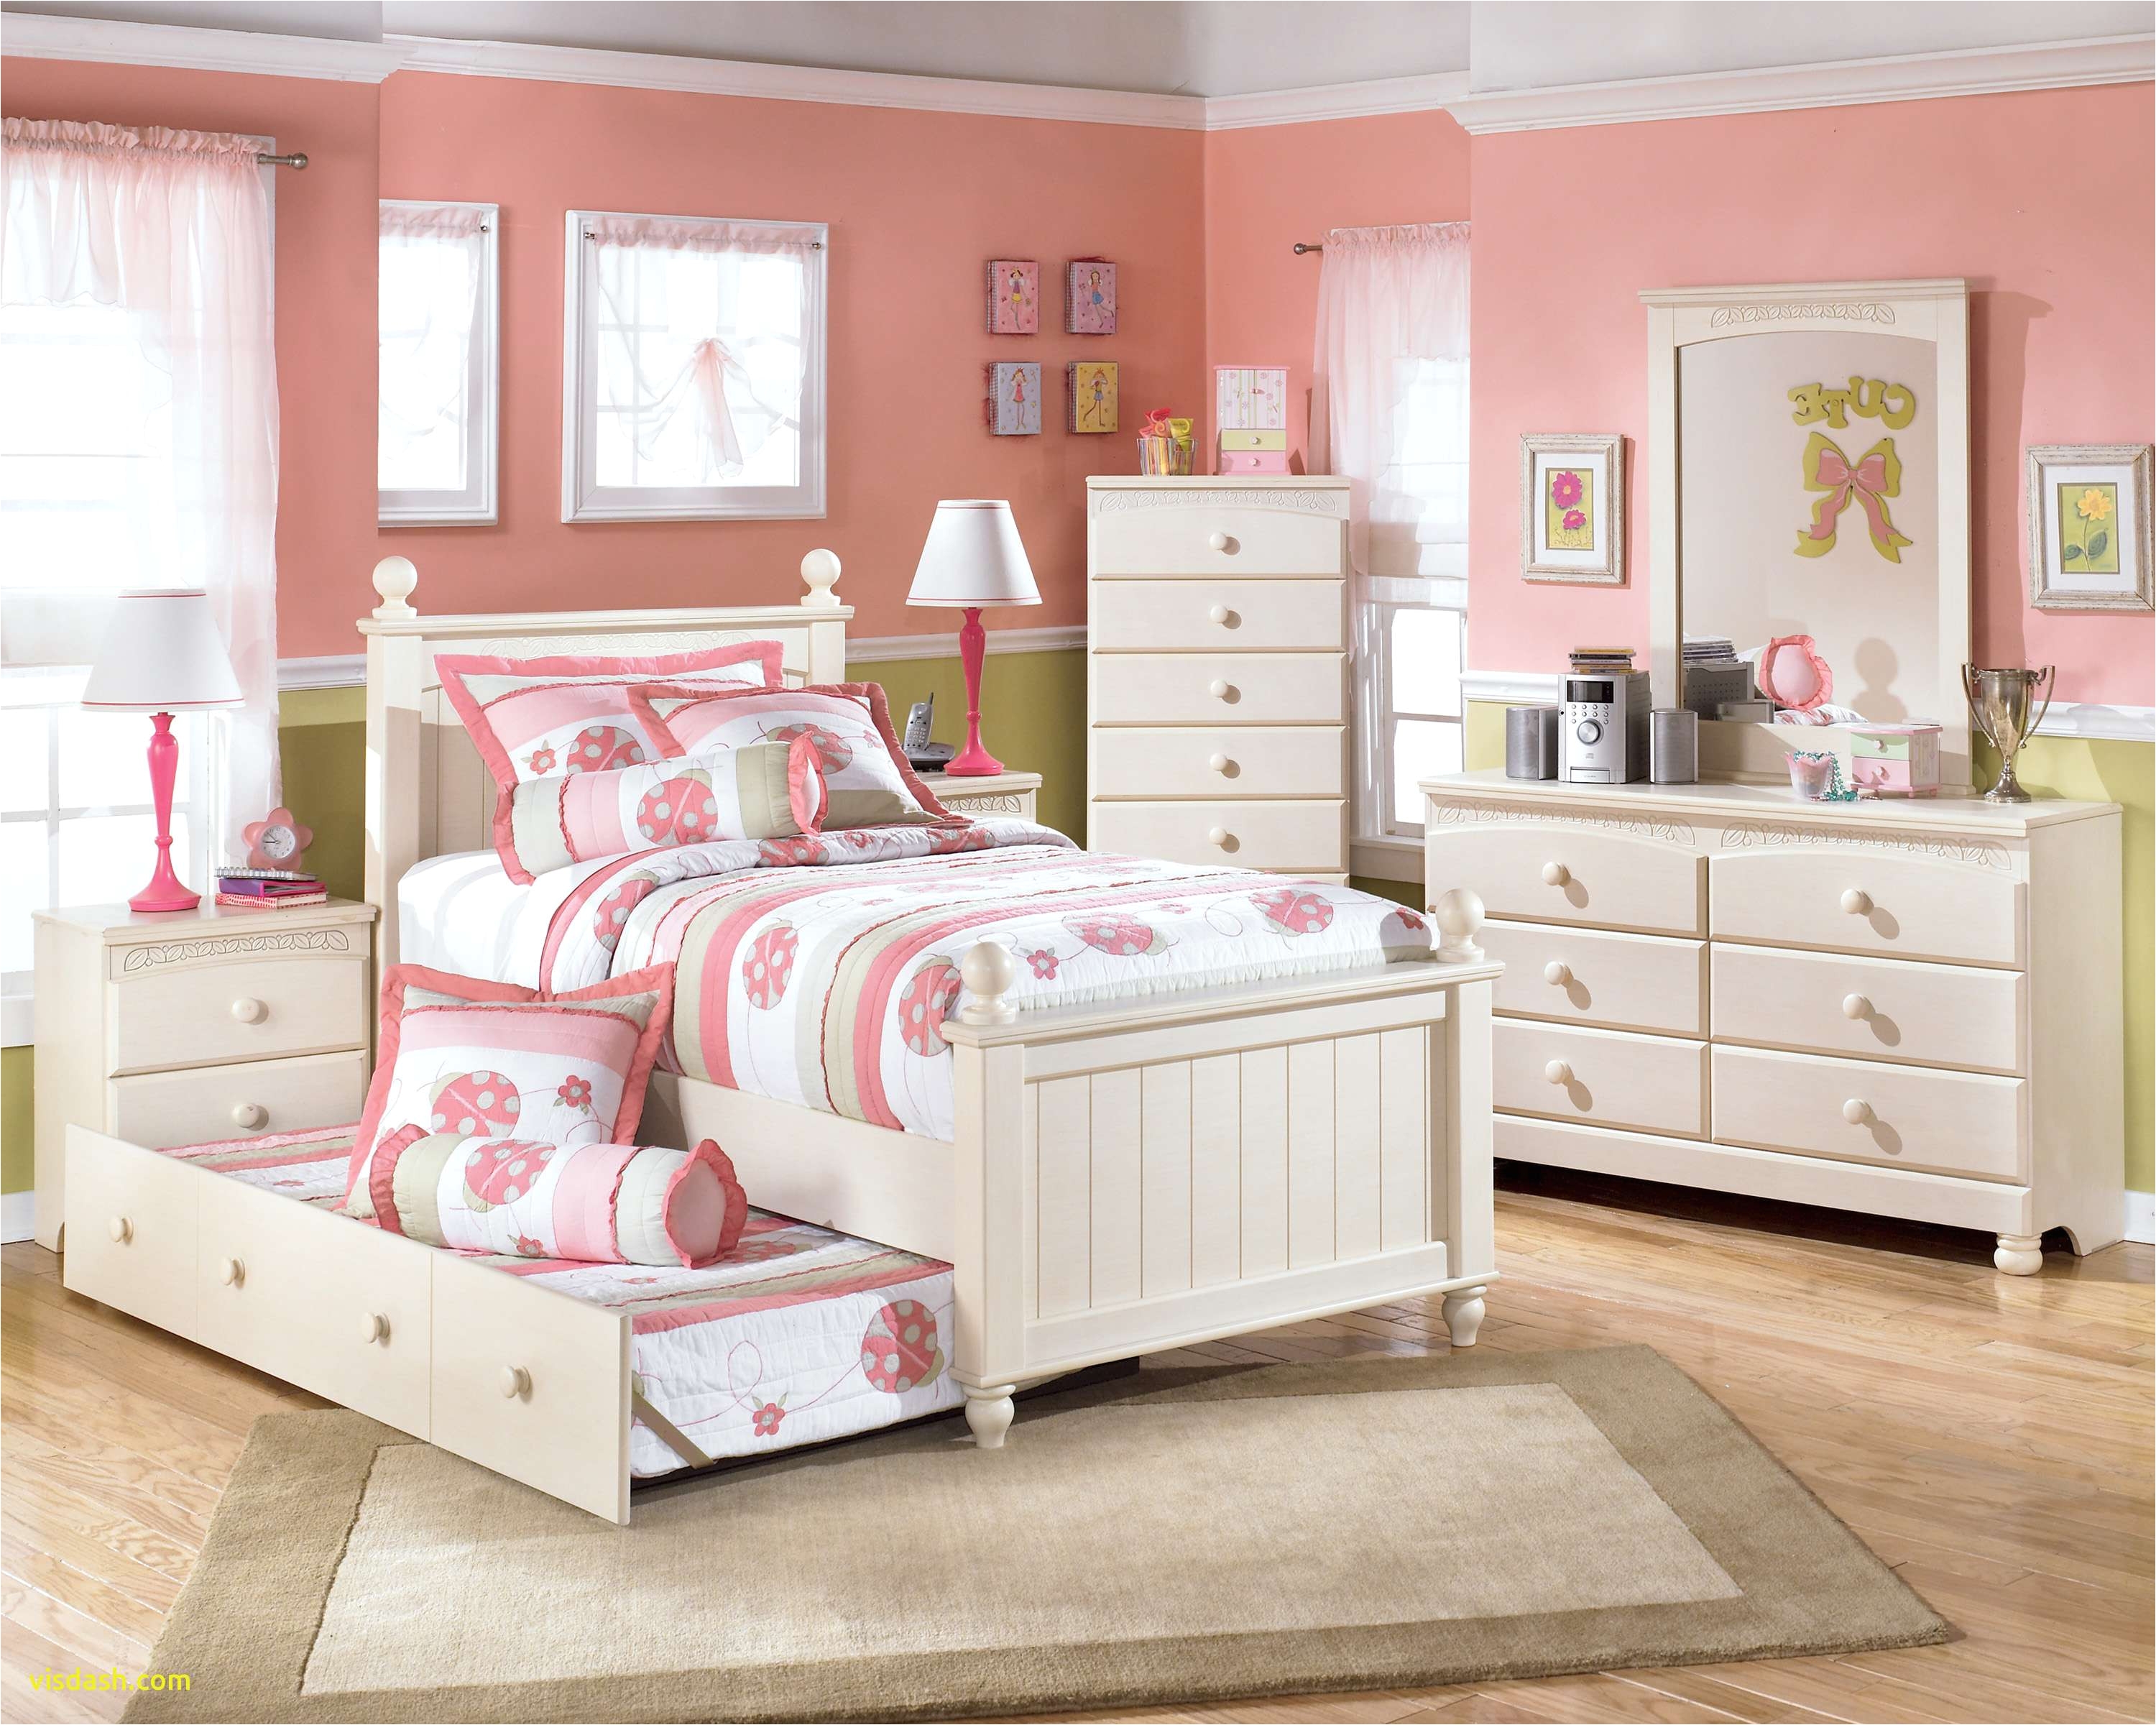 Girls Bedroom Furniture Sets Appealing toddler Girl Bedroom Sets at Tar Children S Furniture Best